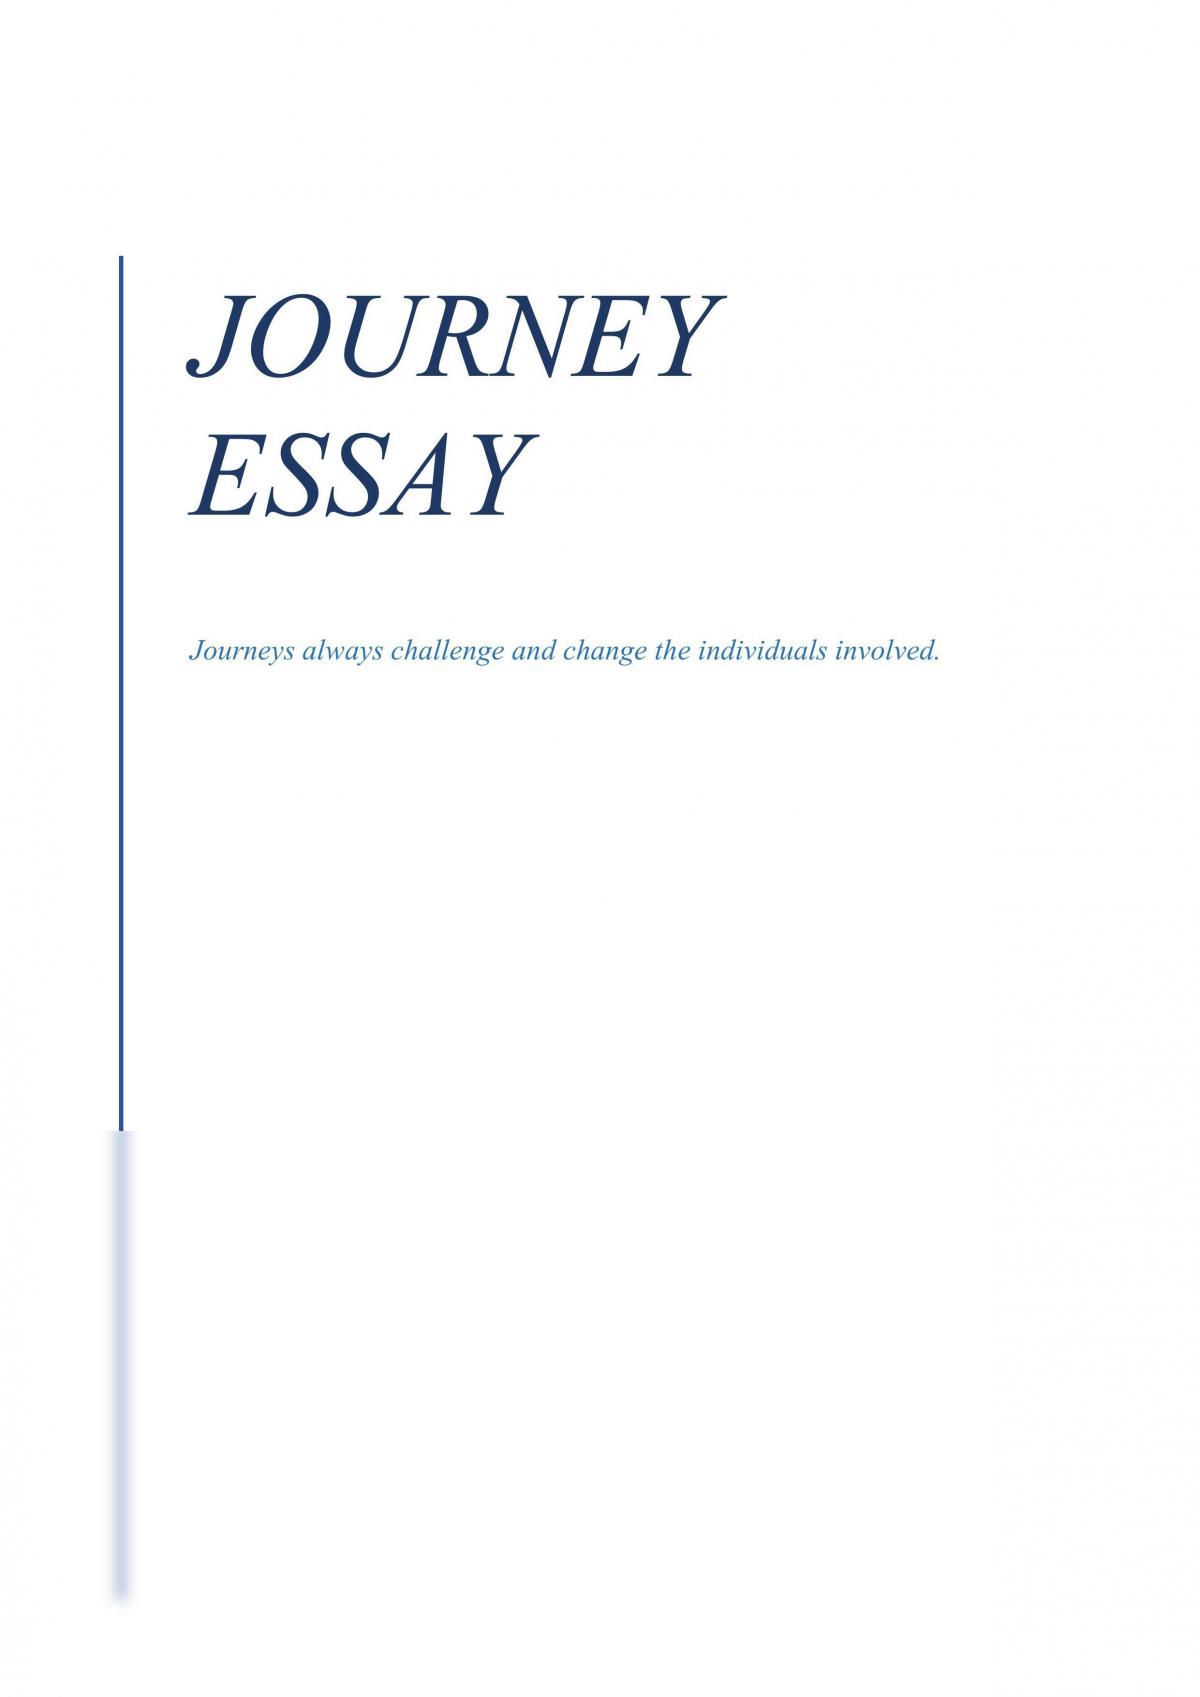 descriptive essay on a journey